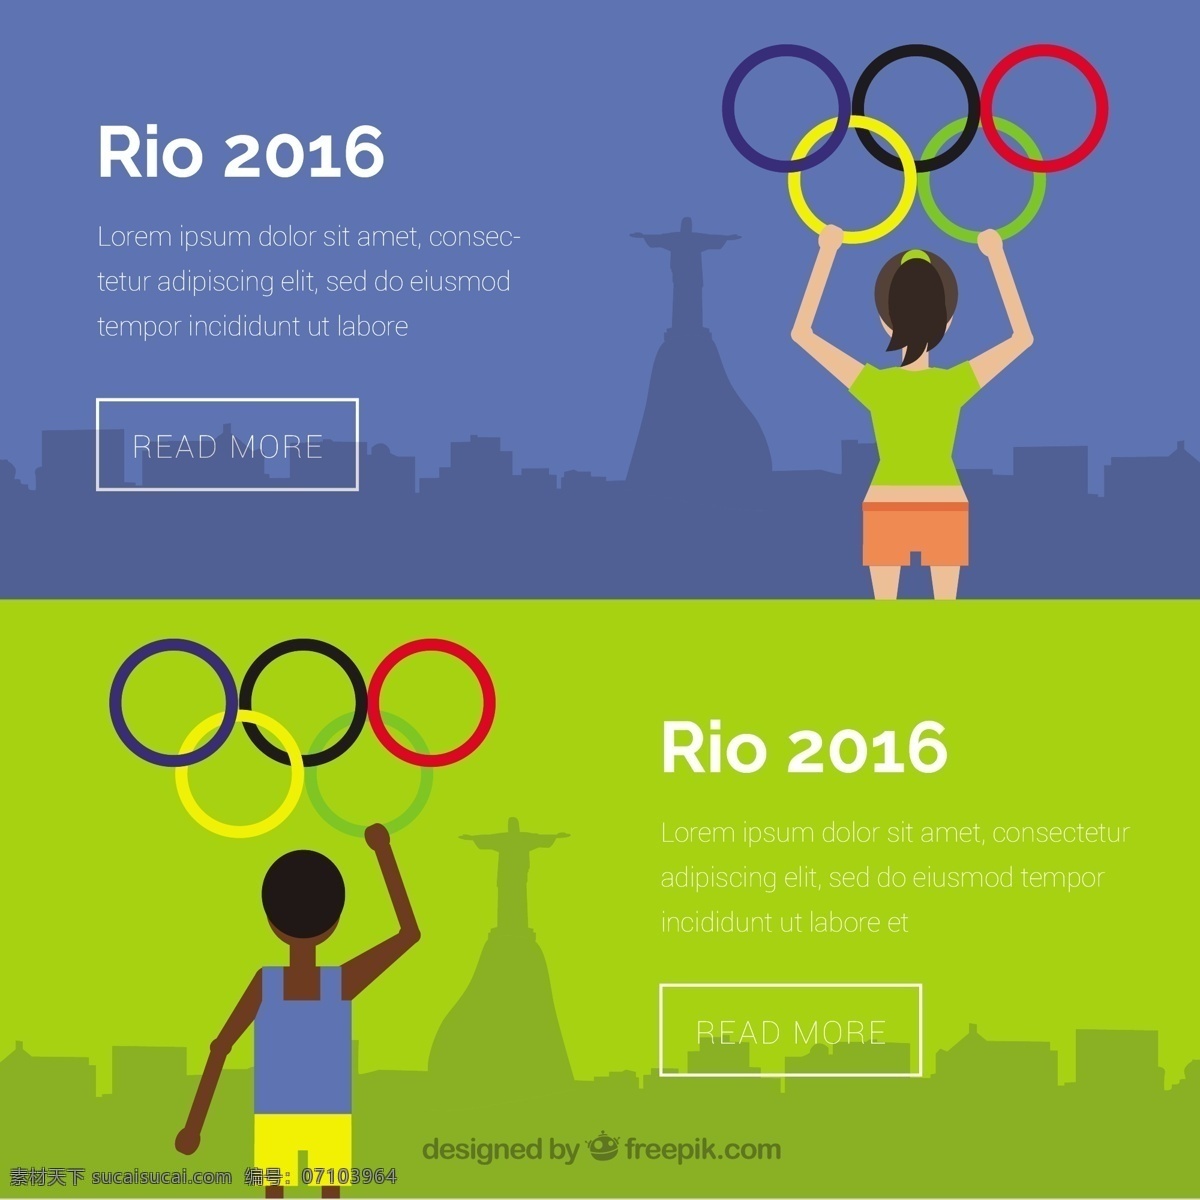 奥运旗帜 旗帜 夏季 体育 健身 网络 健康 横幅 平板 网站 网页设计 活动 2016 平面设计 运动 培训 游戏 巴西